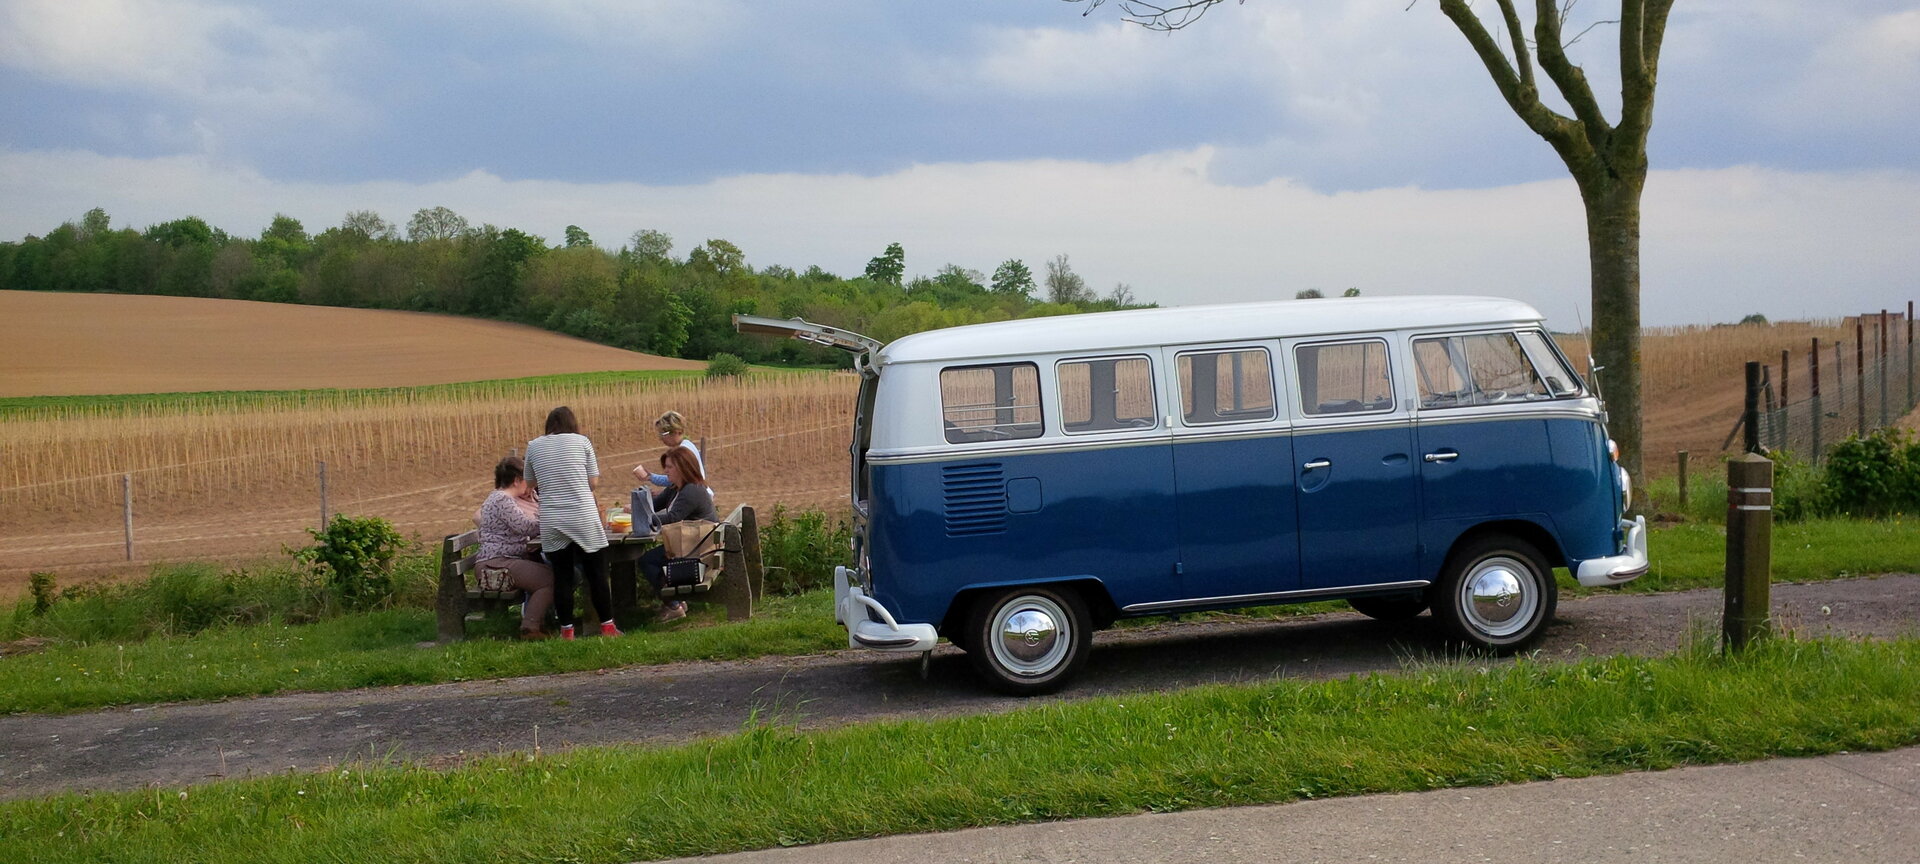 Toeren in Haspengouw met een oldtimer VW t1 bus - Toeren en picknick formule